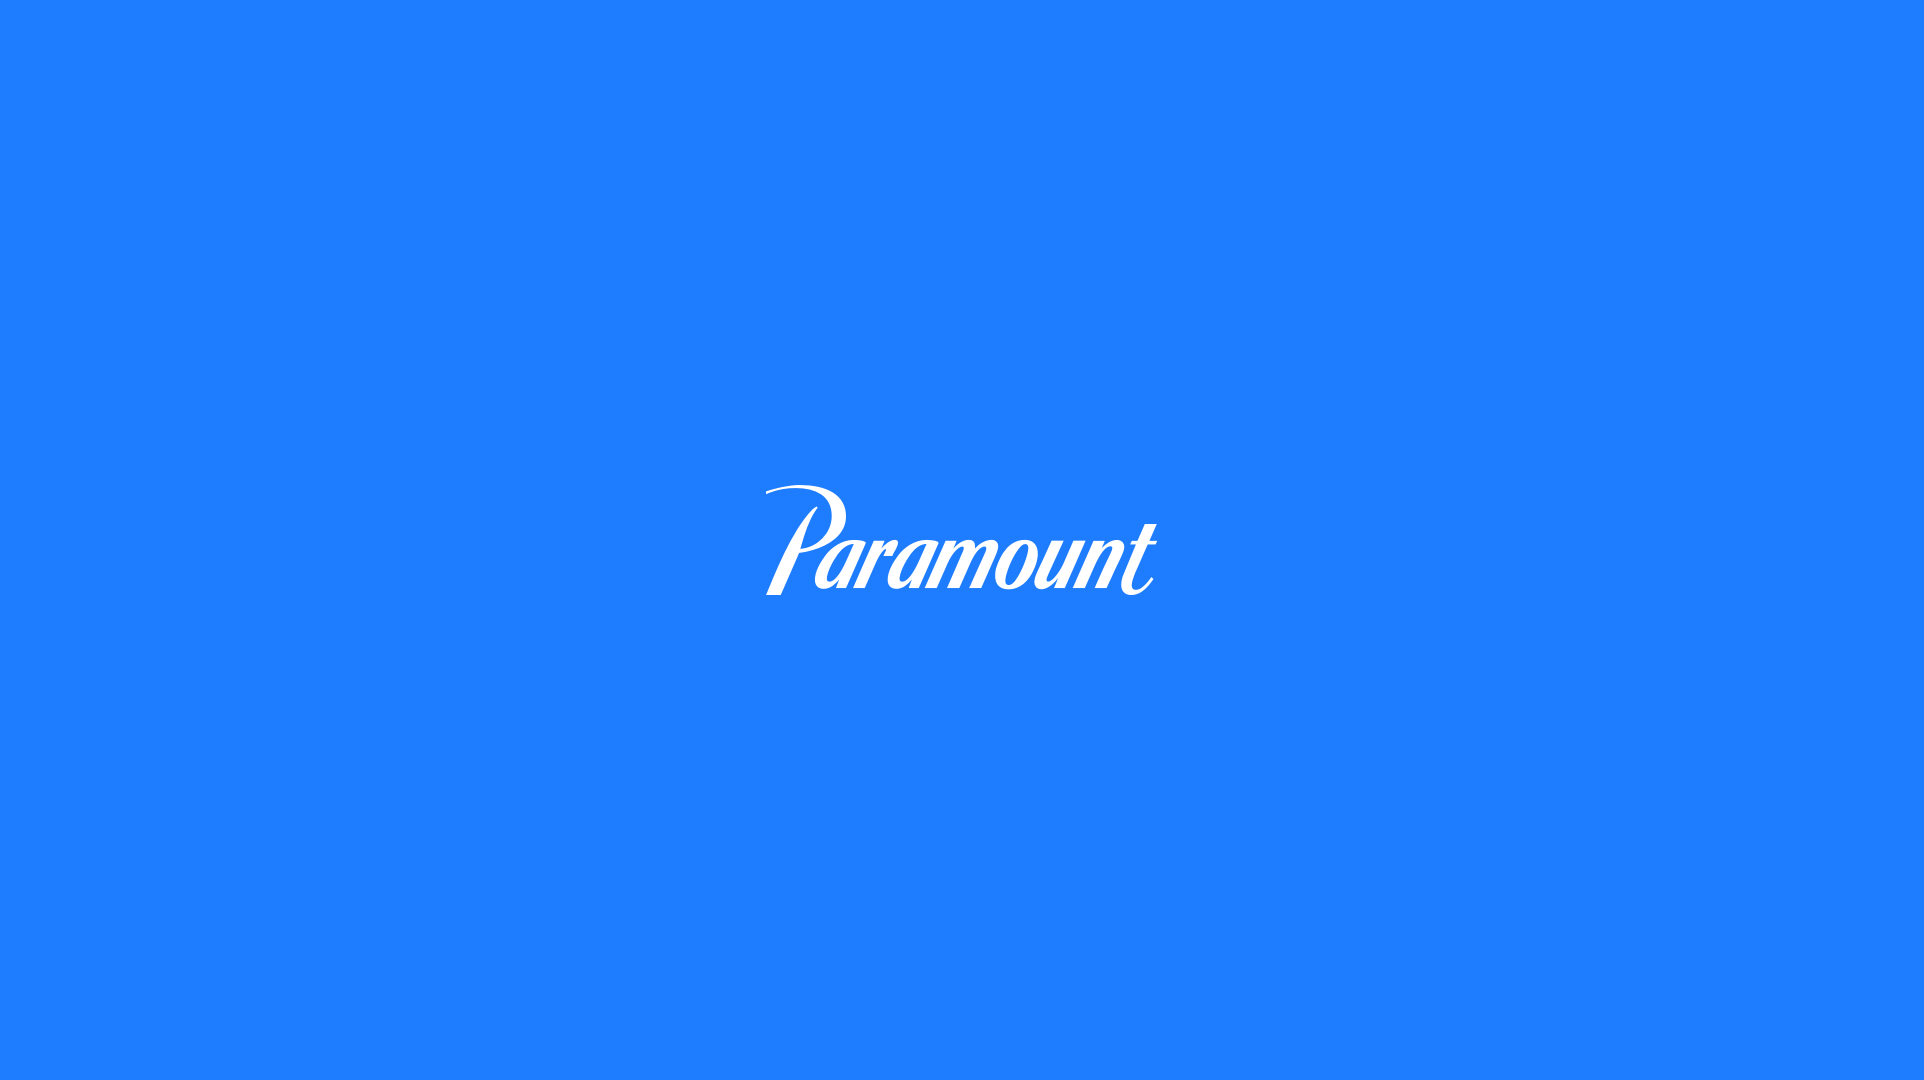 Paramount_logotype04